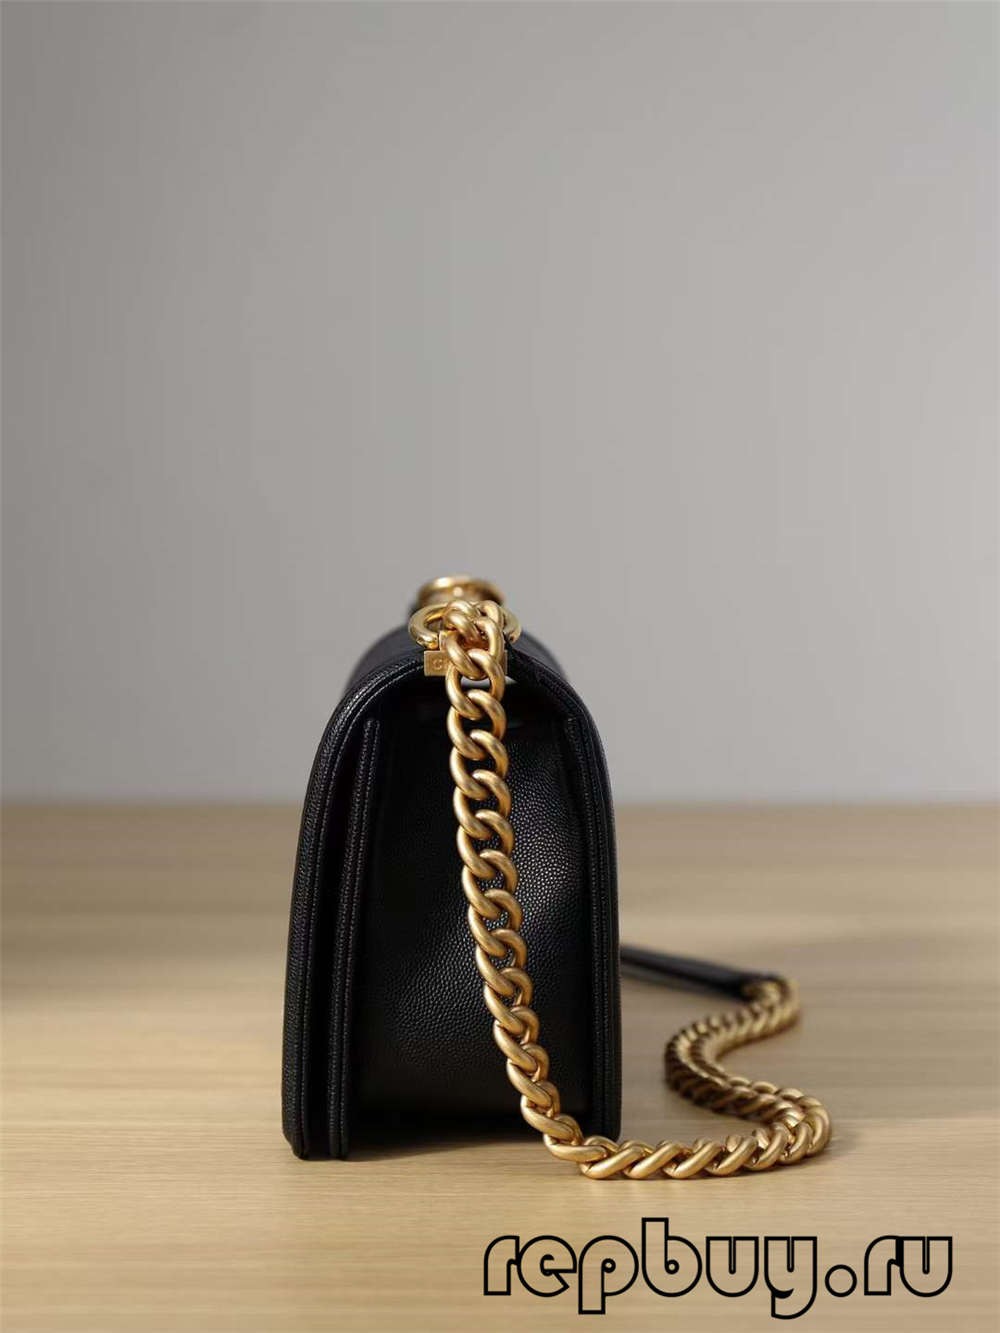 Chanel Leboy Top Replica Handbag Medium Gold Buckle (2022 Edition)-Լավագույն որակի կեղծ Louis Vuitton պայուսակների առցանց խանութ, Replica դիզայներական պայուսակ ru